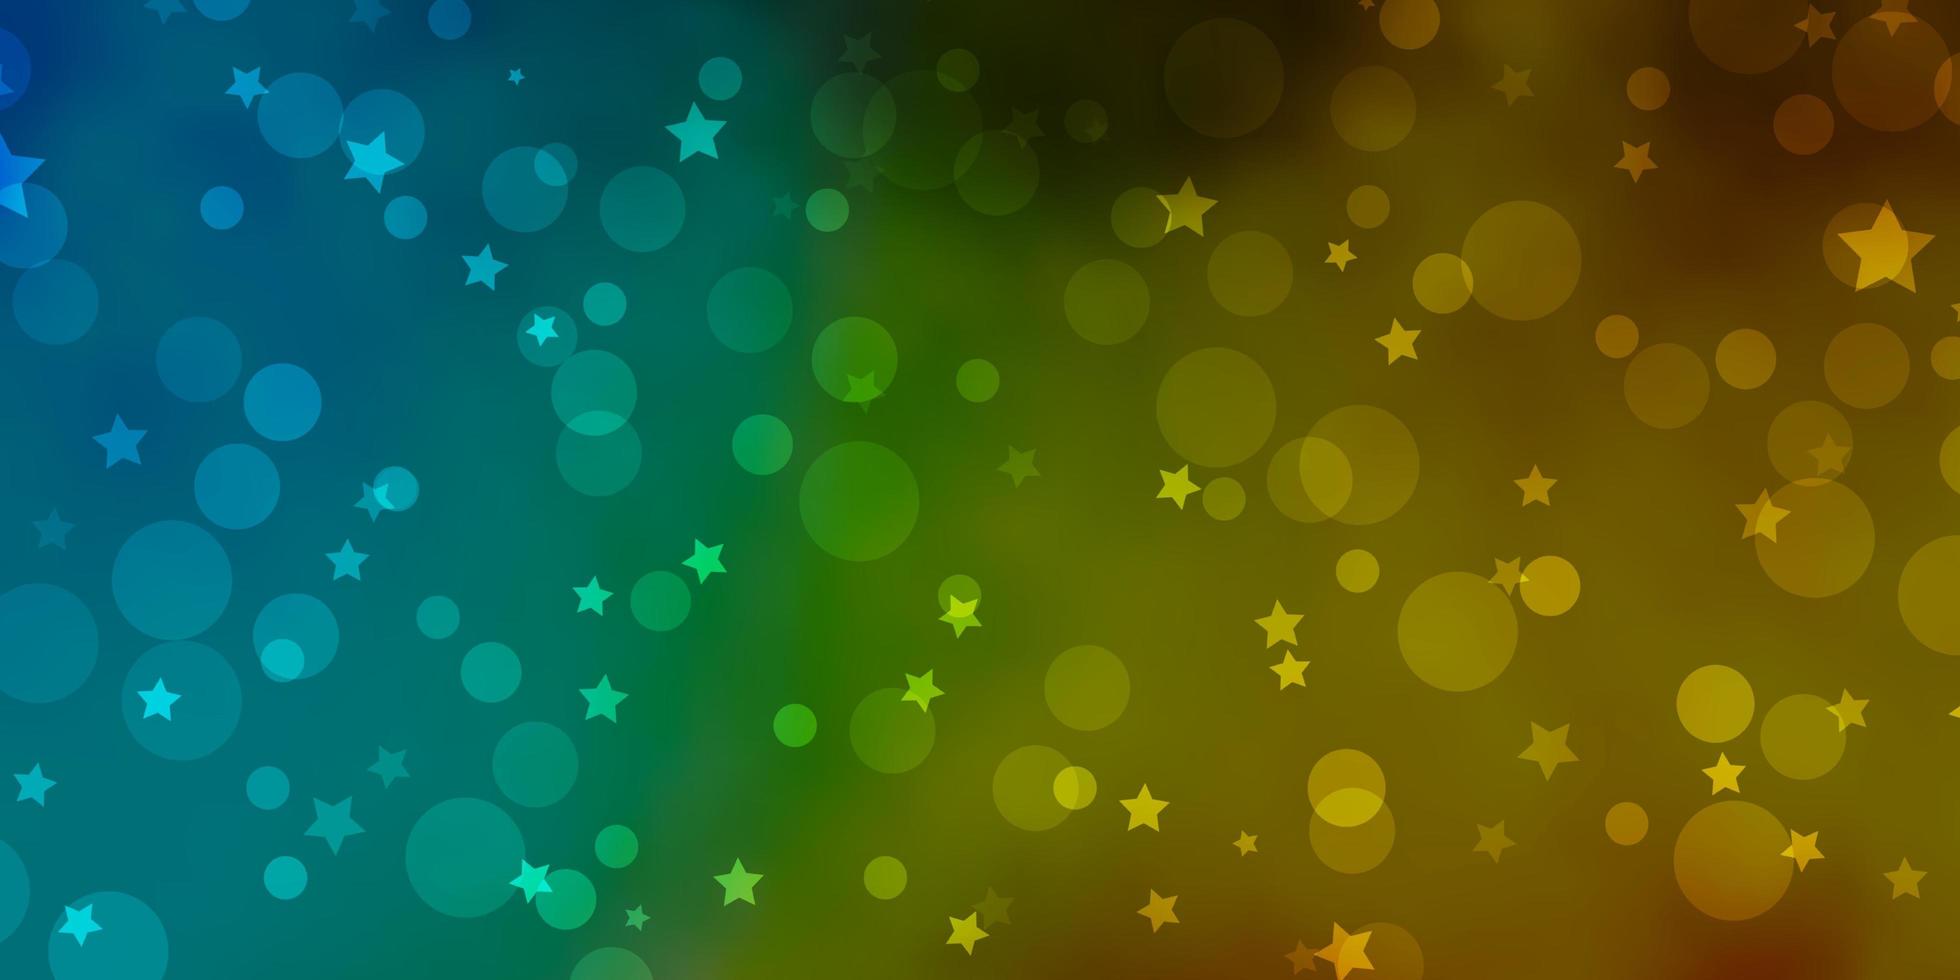 ljusblå, gul vektormall med cirklar, stjärnor. färgglad illustration med lutningspunkter, stjärnor. mönster för trendigt tyg, tapeter. vektor